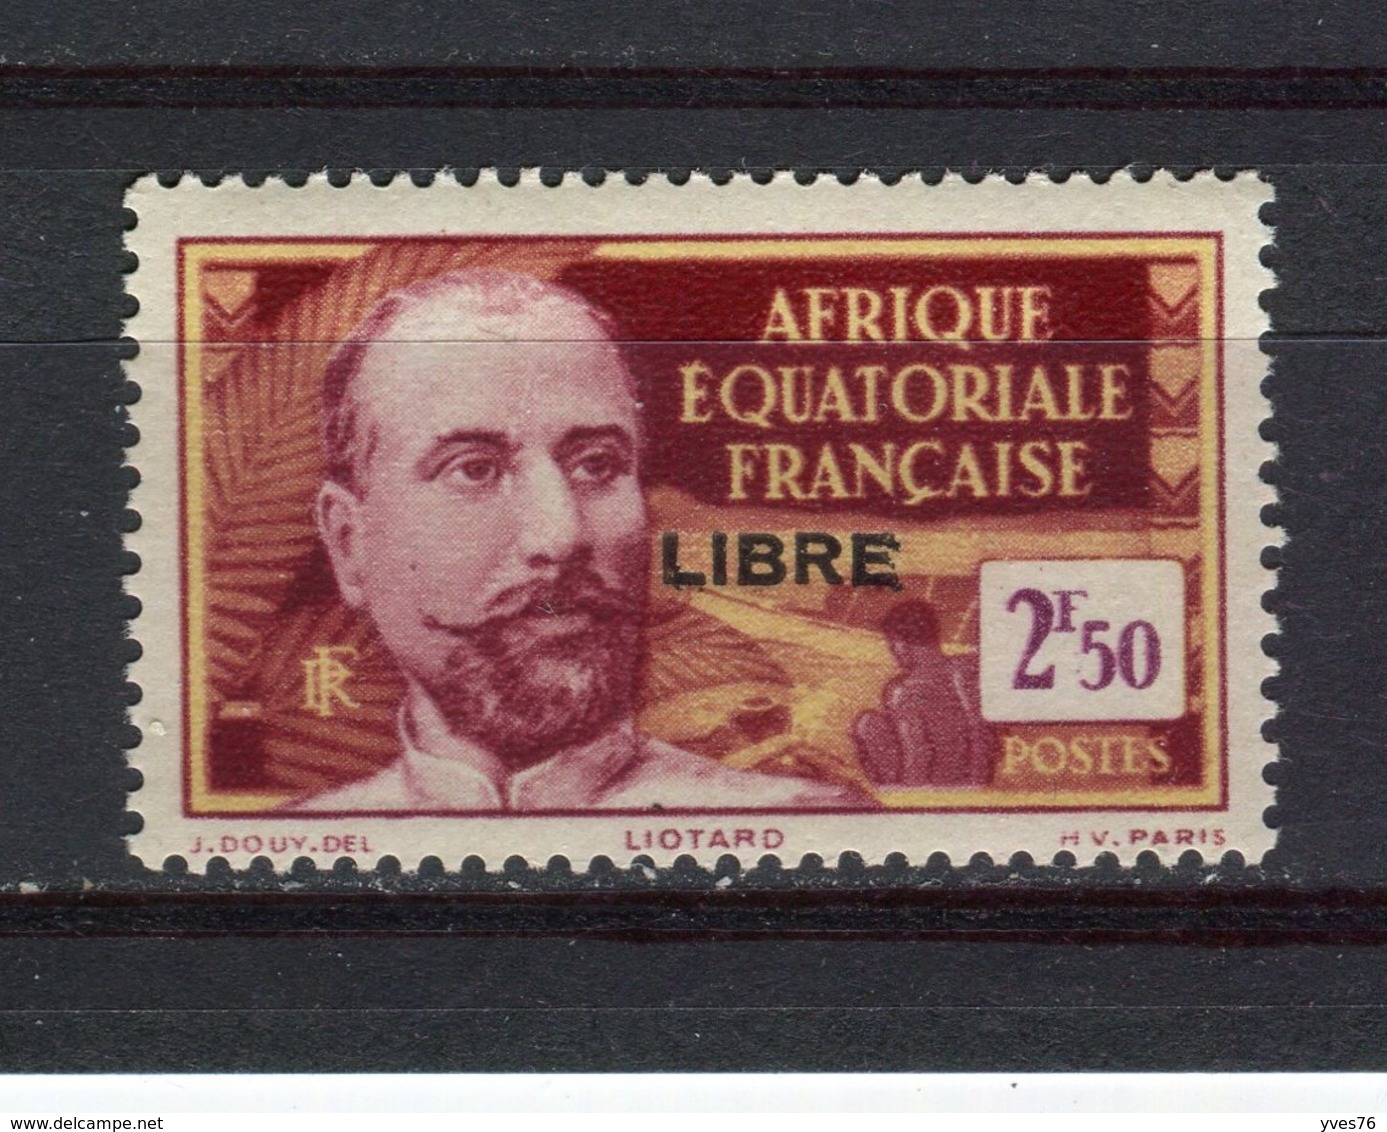 AFRIQUE EQUATORIALE FRANCAISE - Y&T N° 123** - MNH - Liotard Surchargé LIBRE - Neufs